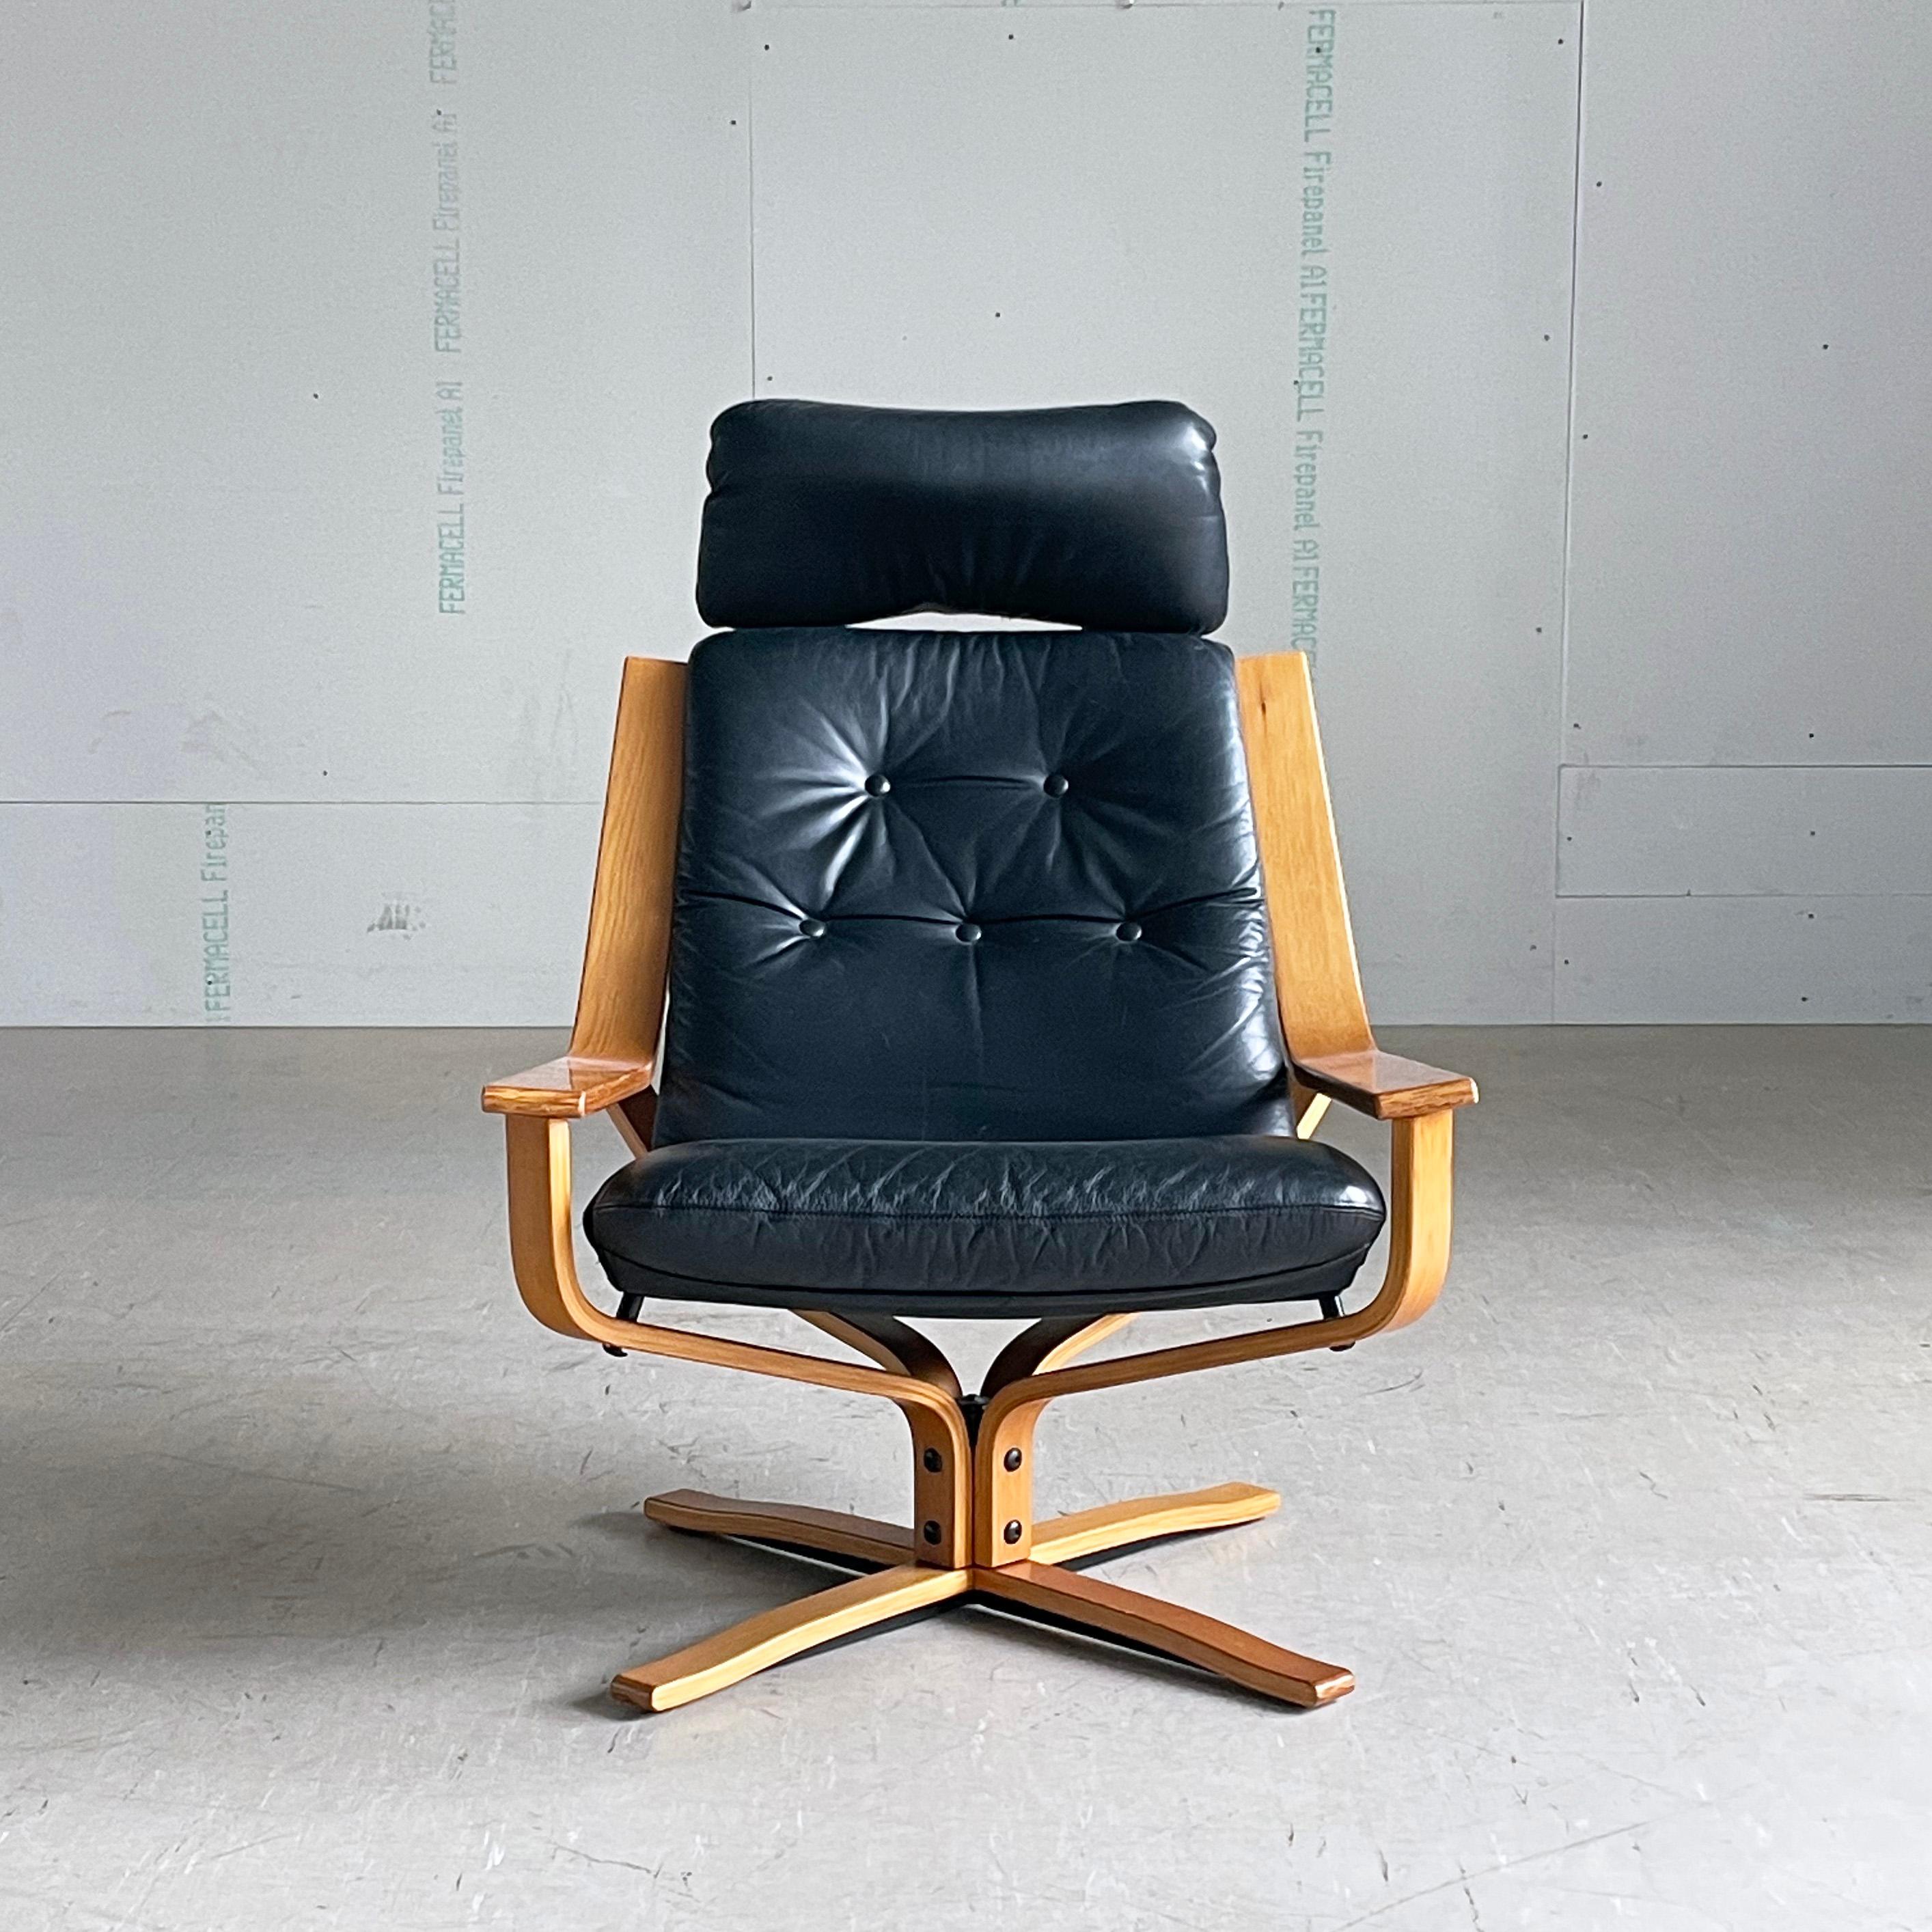 Chaise longue pivotante en cuir Joe Rufenacht des années 1970, produite par JR Furniture, Australie. L'assise et le dossier en cuir noir paddé reposent sur un piètement pivotant en bois courbé. En très bon état.
